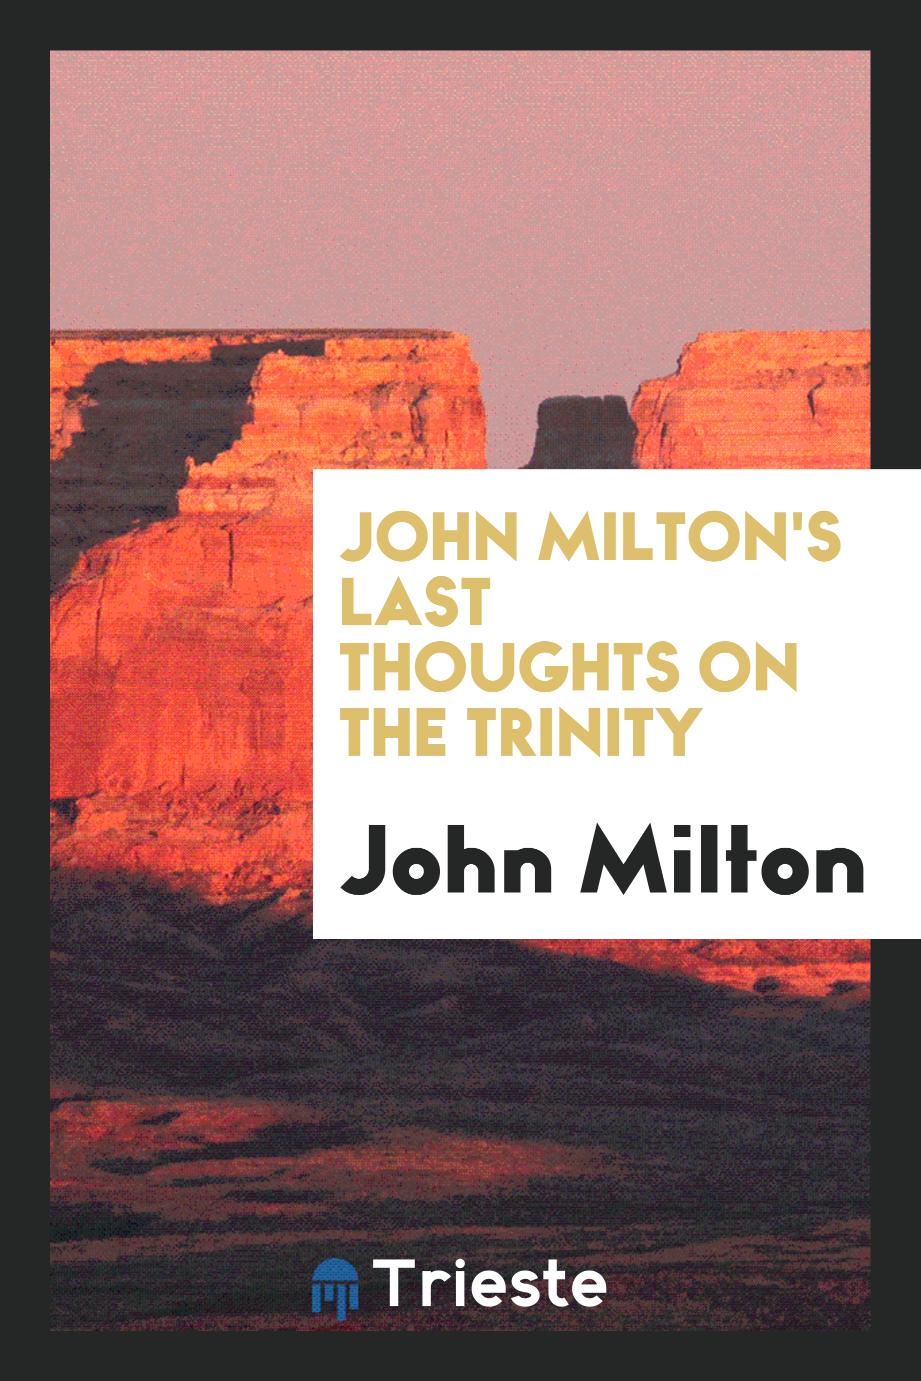 John Milton - John Milton's Last Thoughts on the Trinity